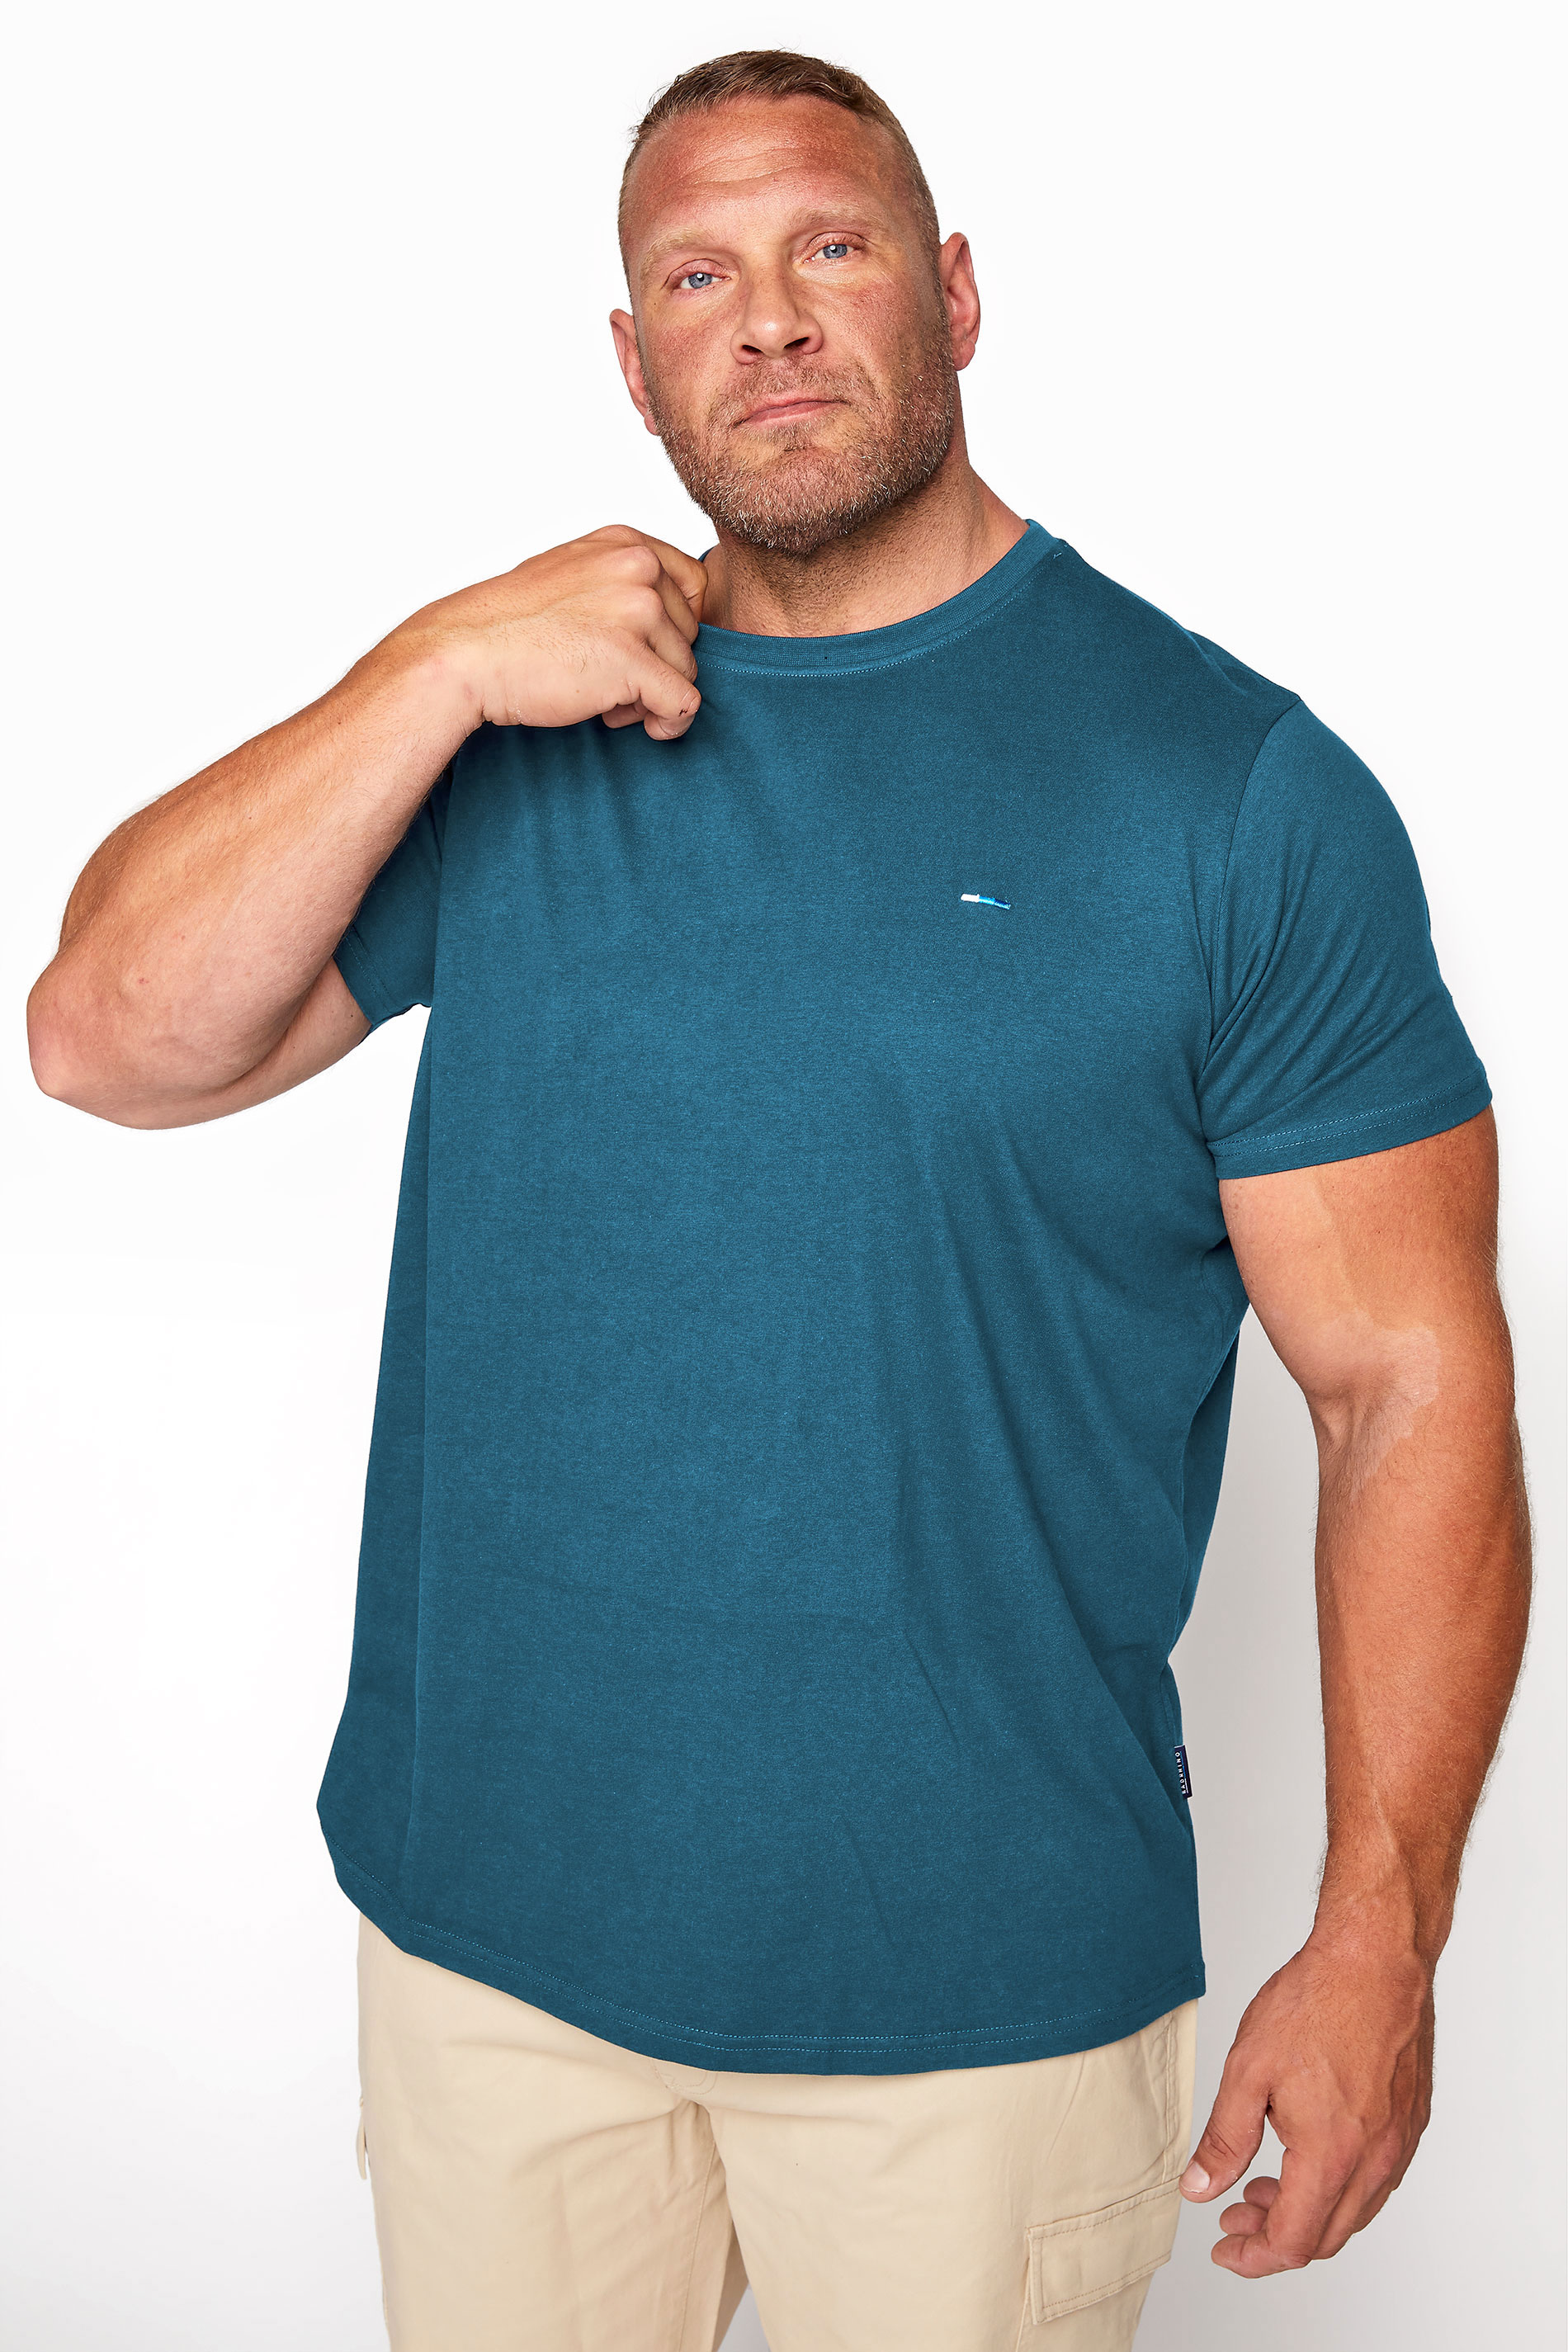 BadRhino Ocean Blue Core T-Shirt | BadRhino 1